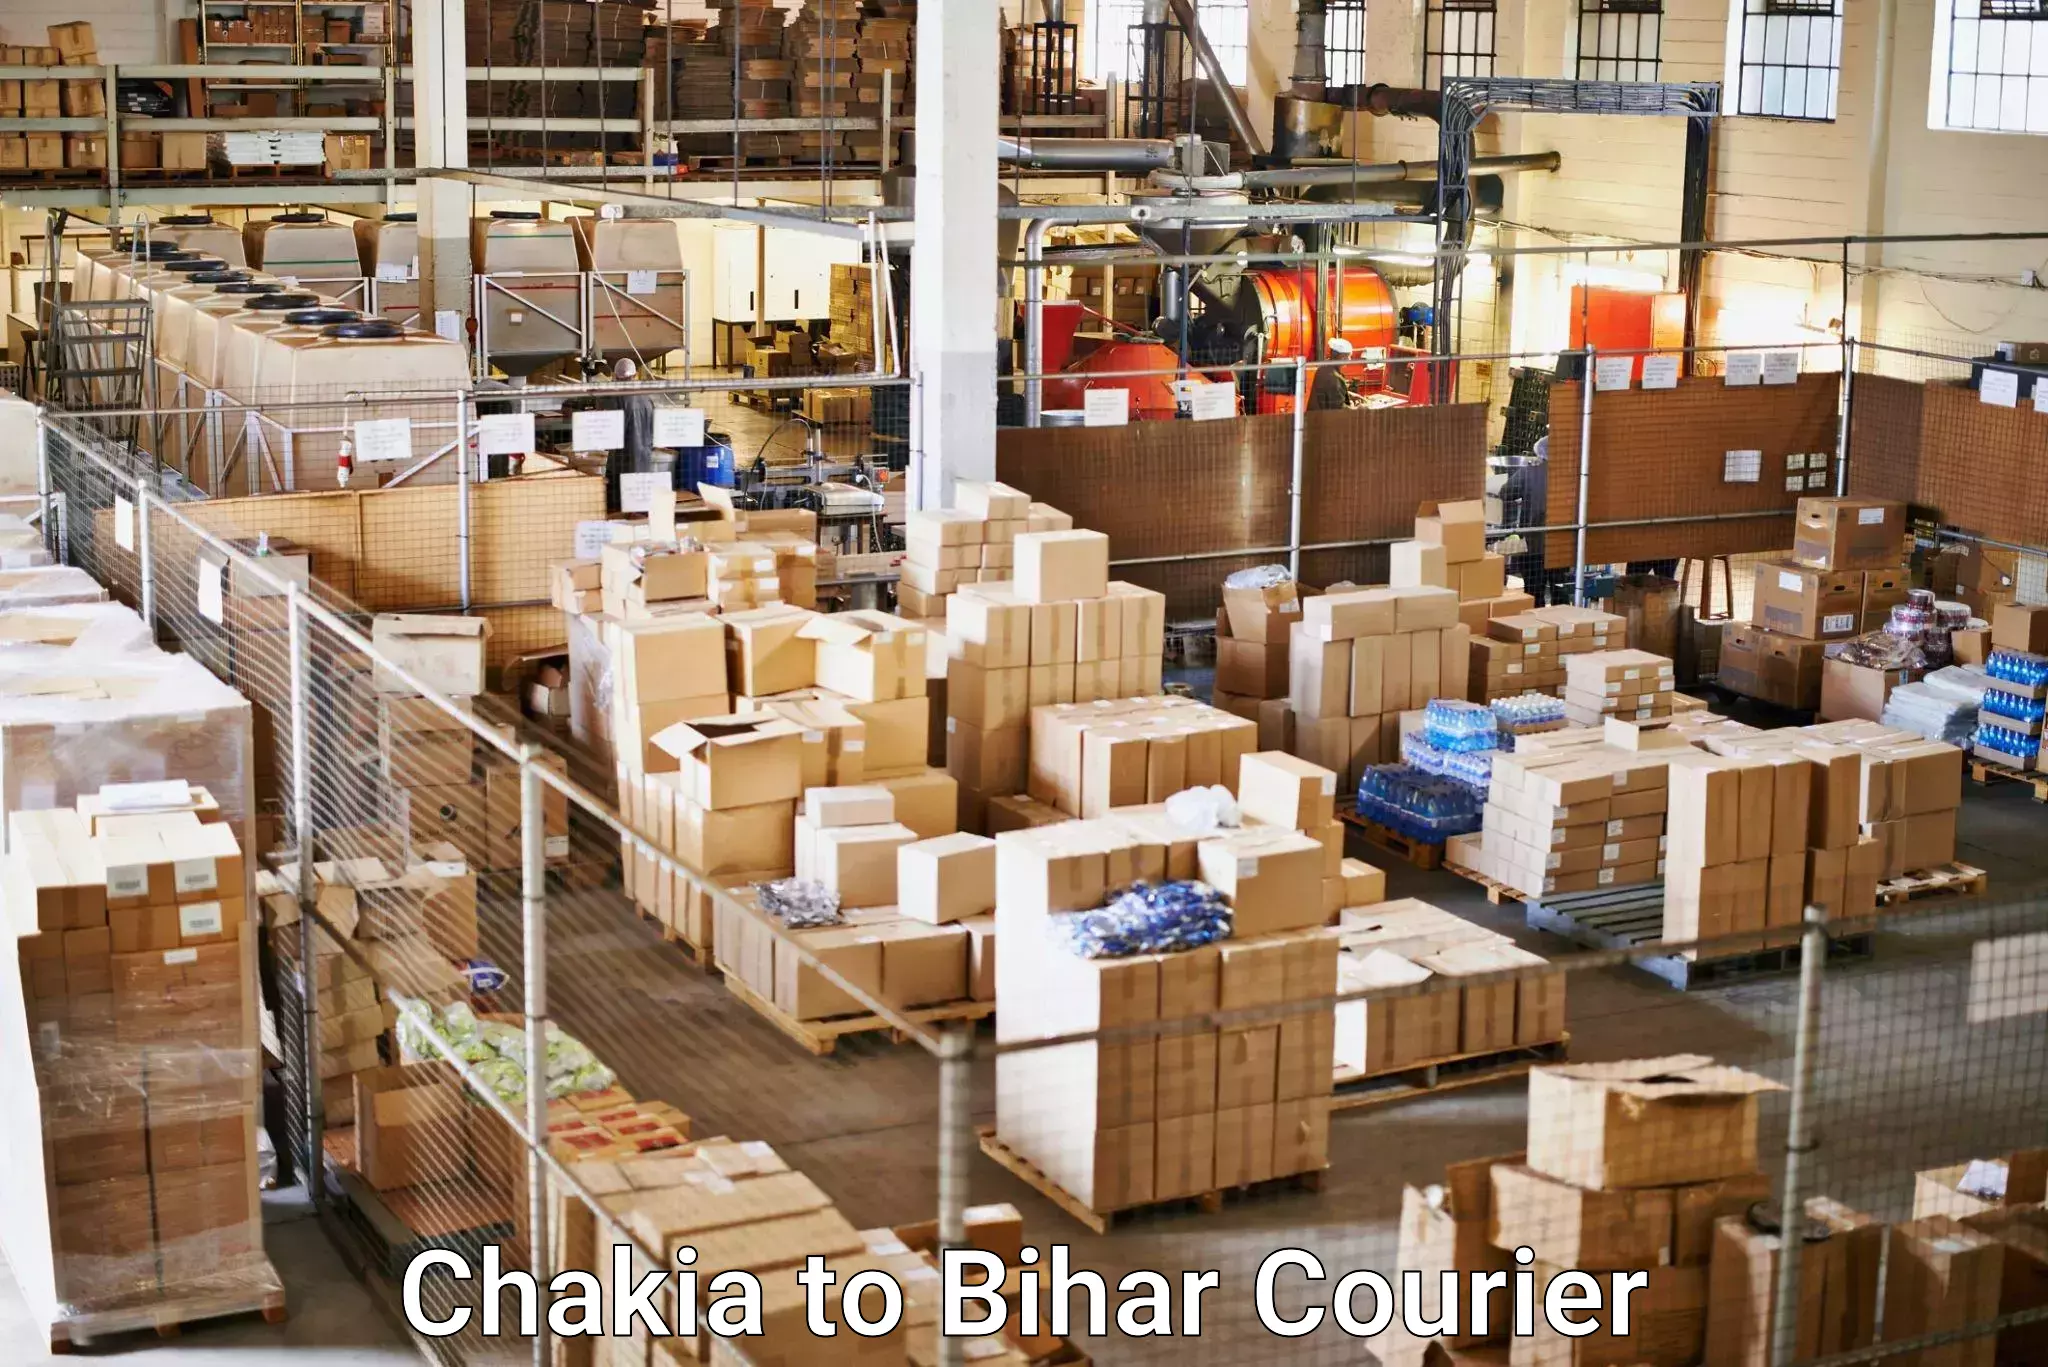 Express postal services Chakia to Bihar